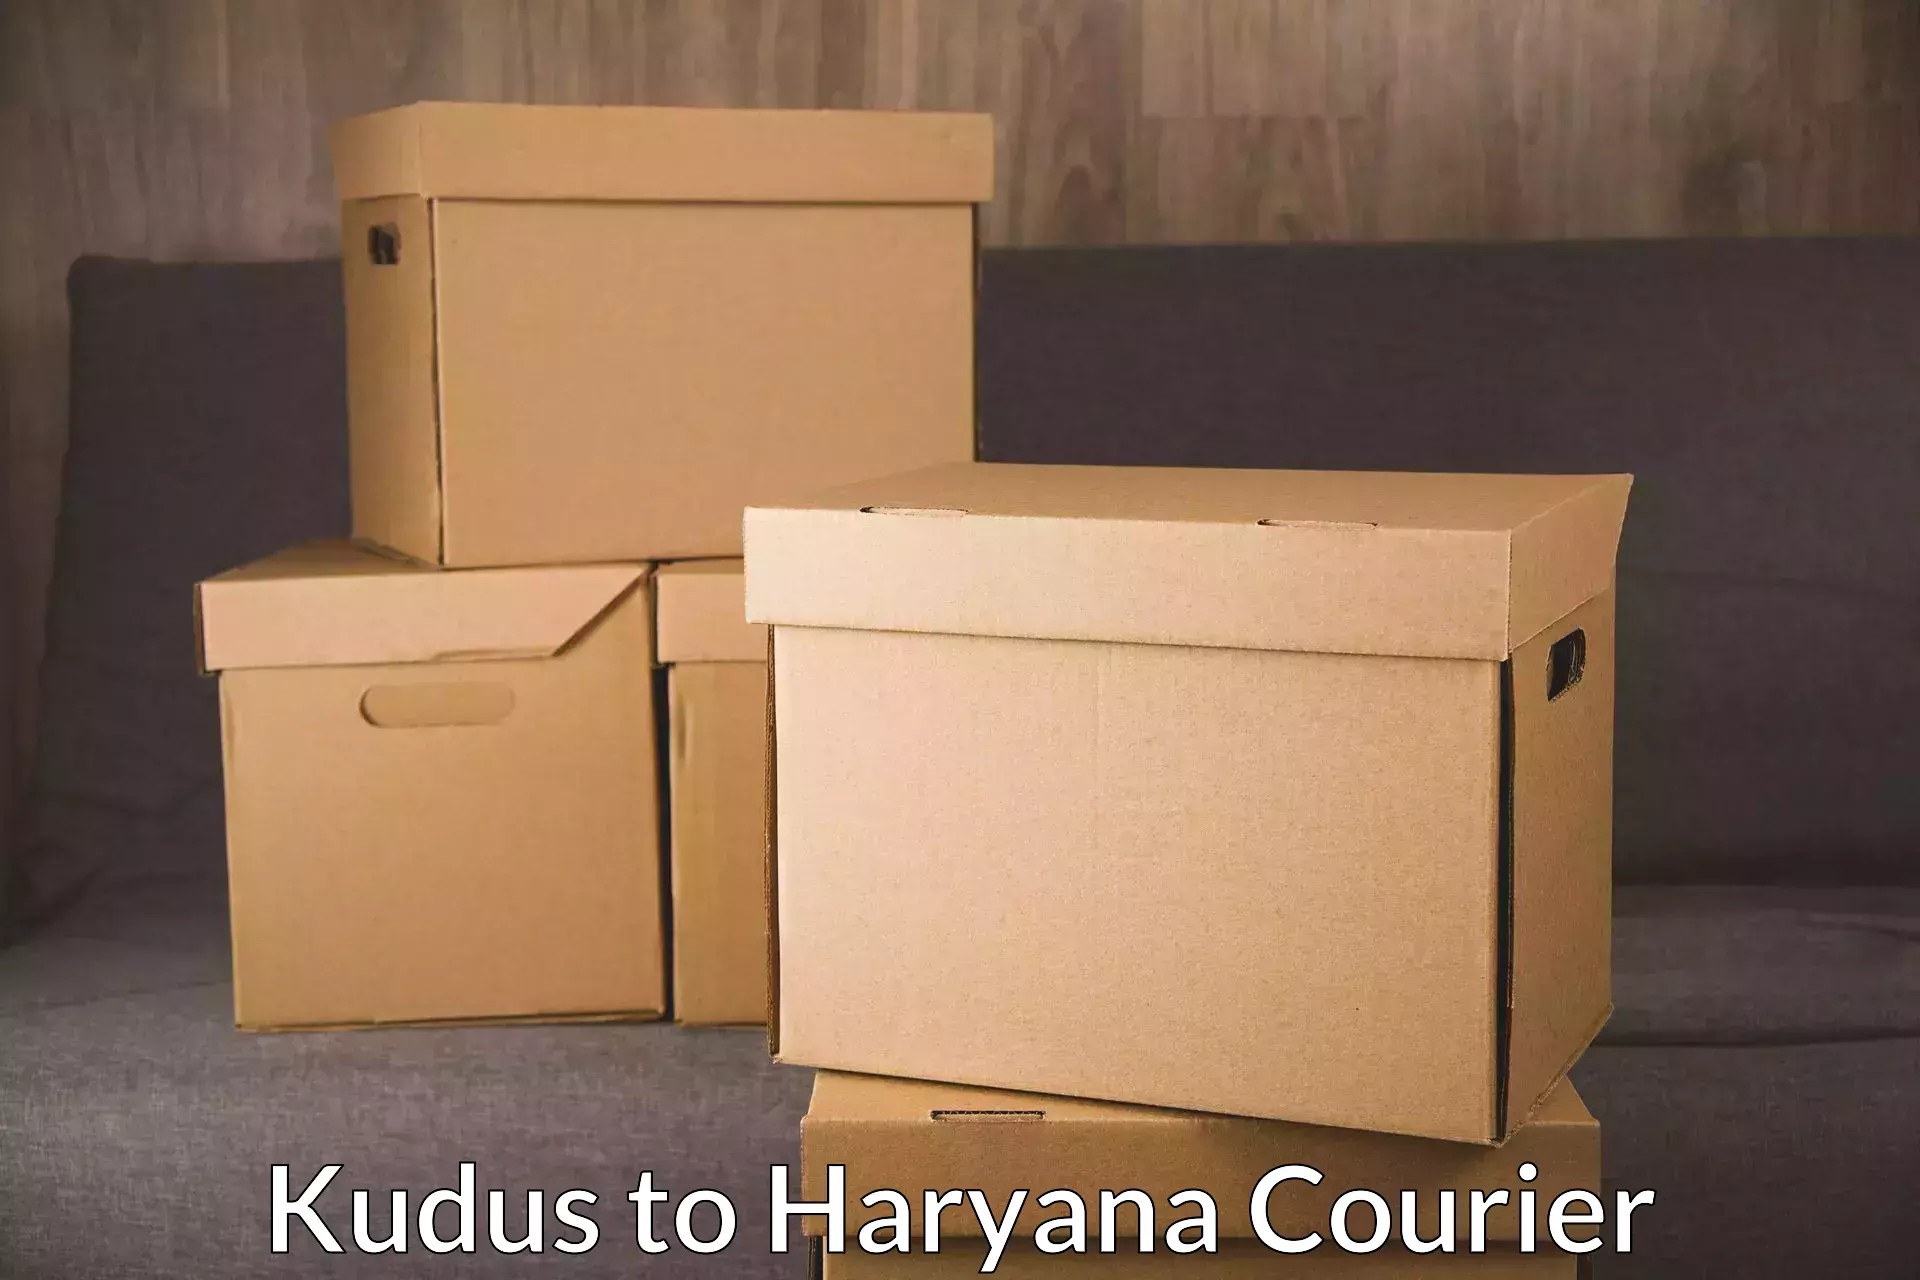 Customized shipping options Kudus to Hansi